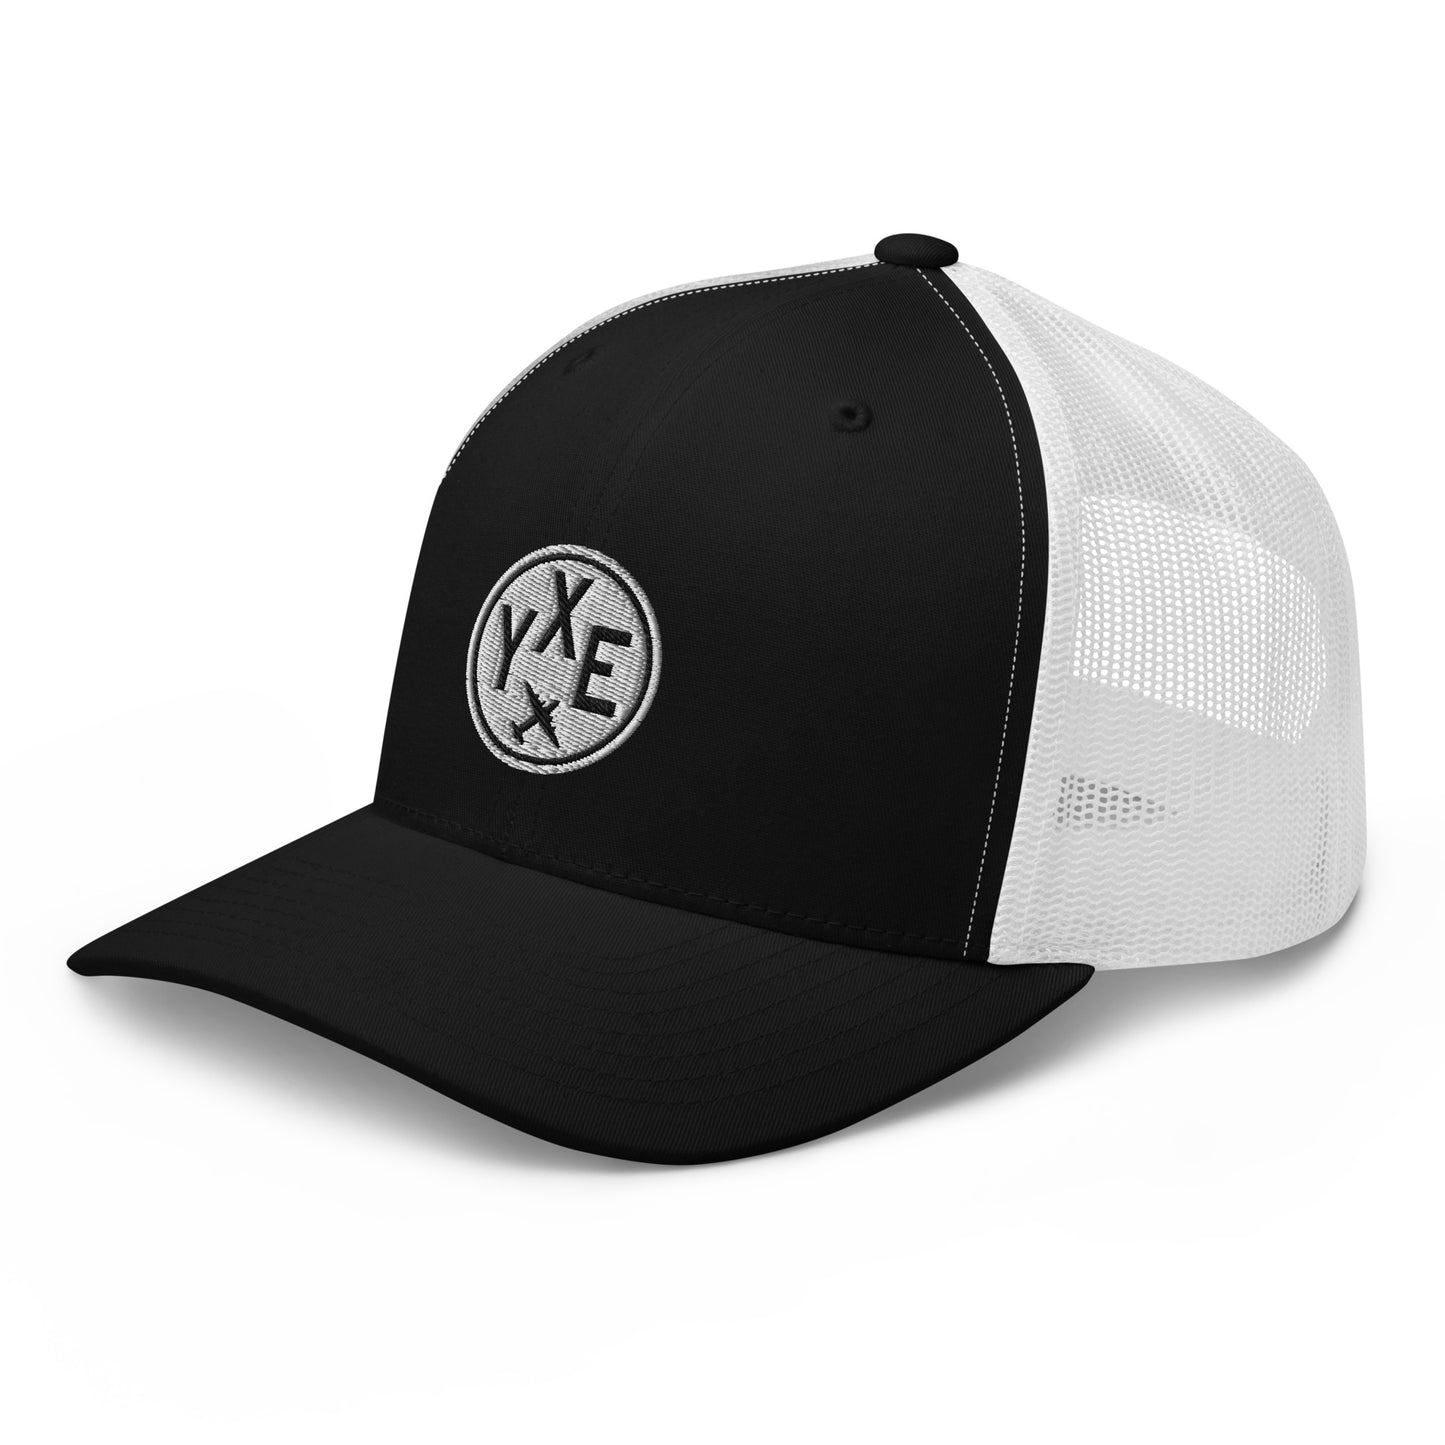 Roundel Trucker Hat - Black & White • YXE Saskatoon • YHM Designs - Image 01